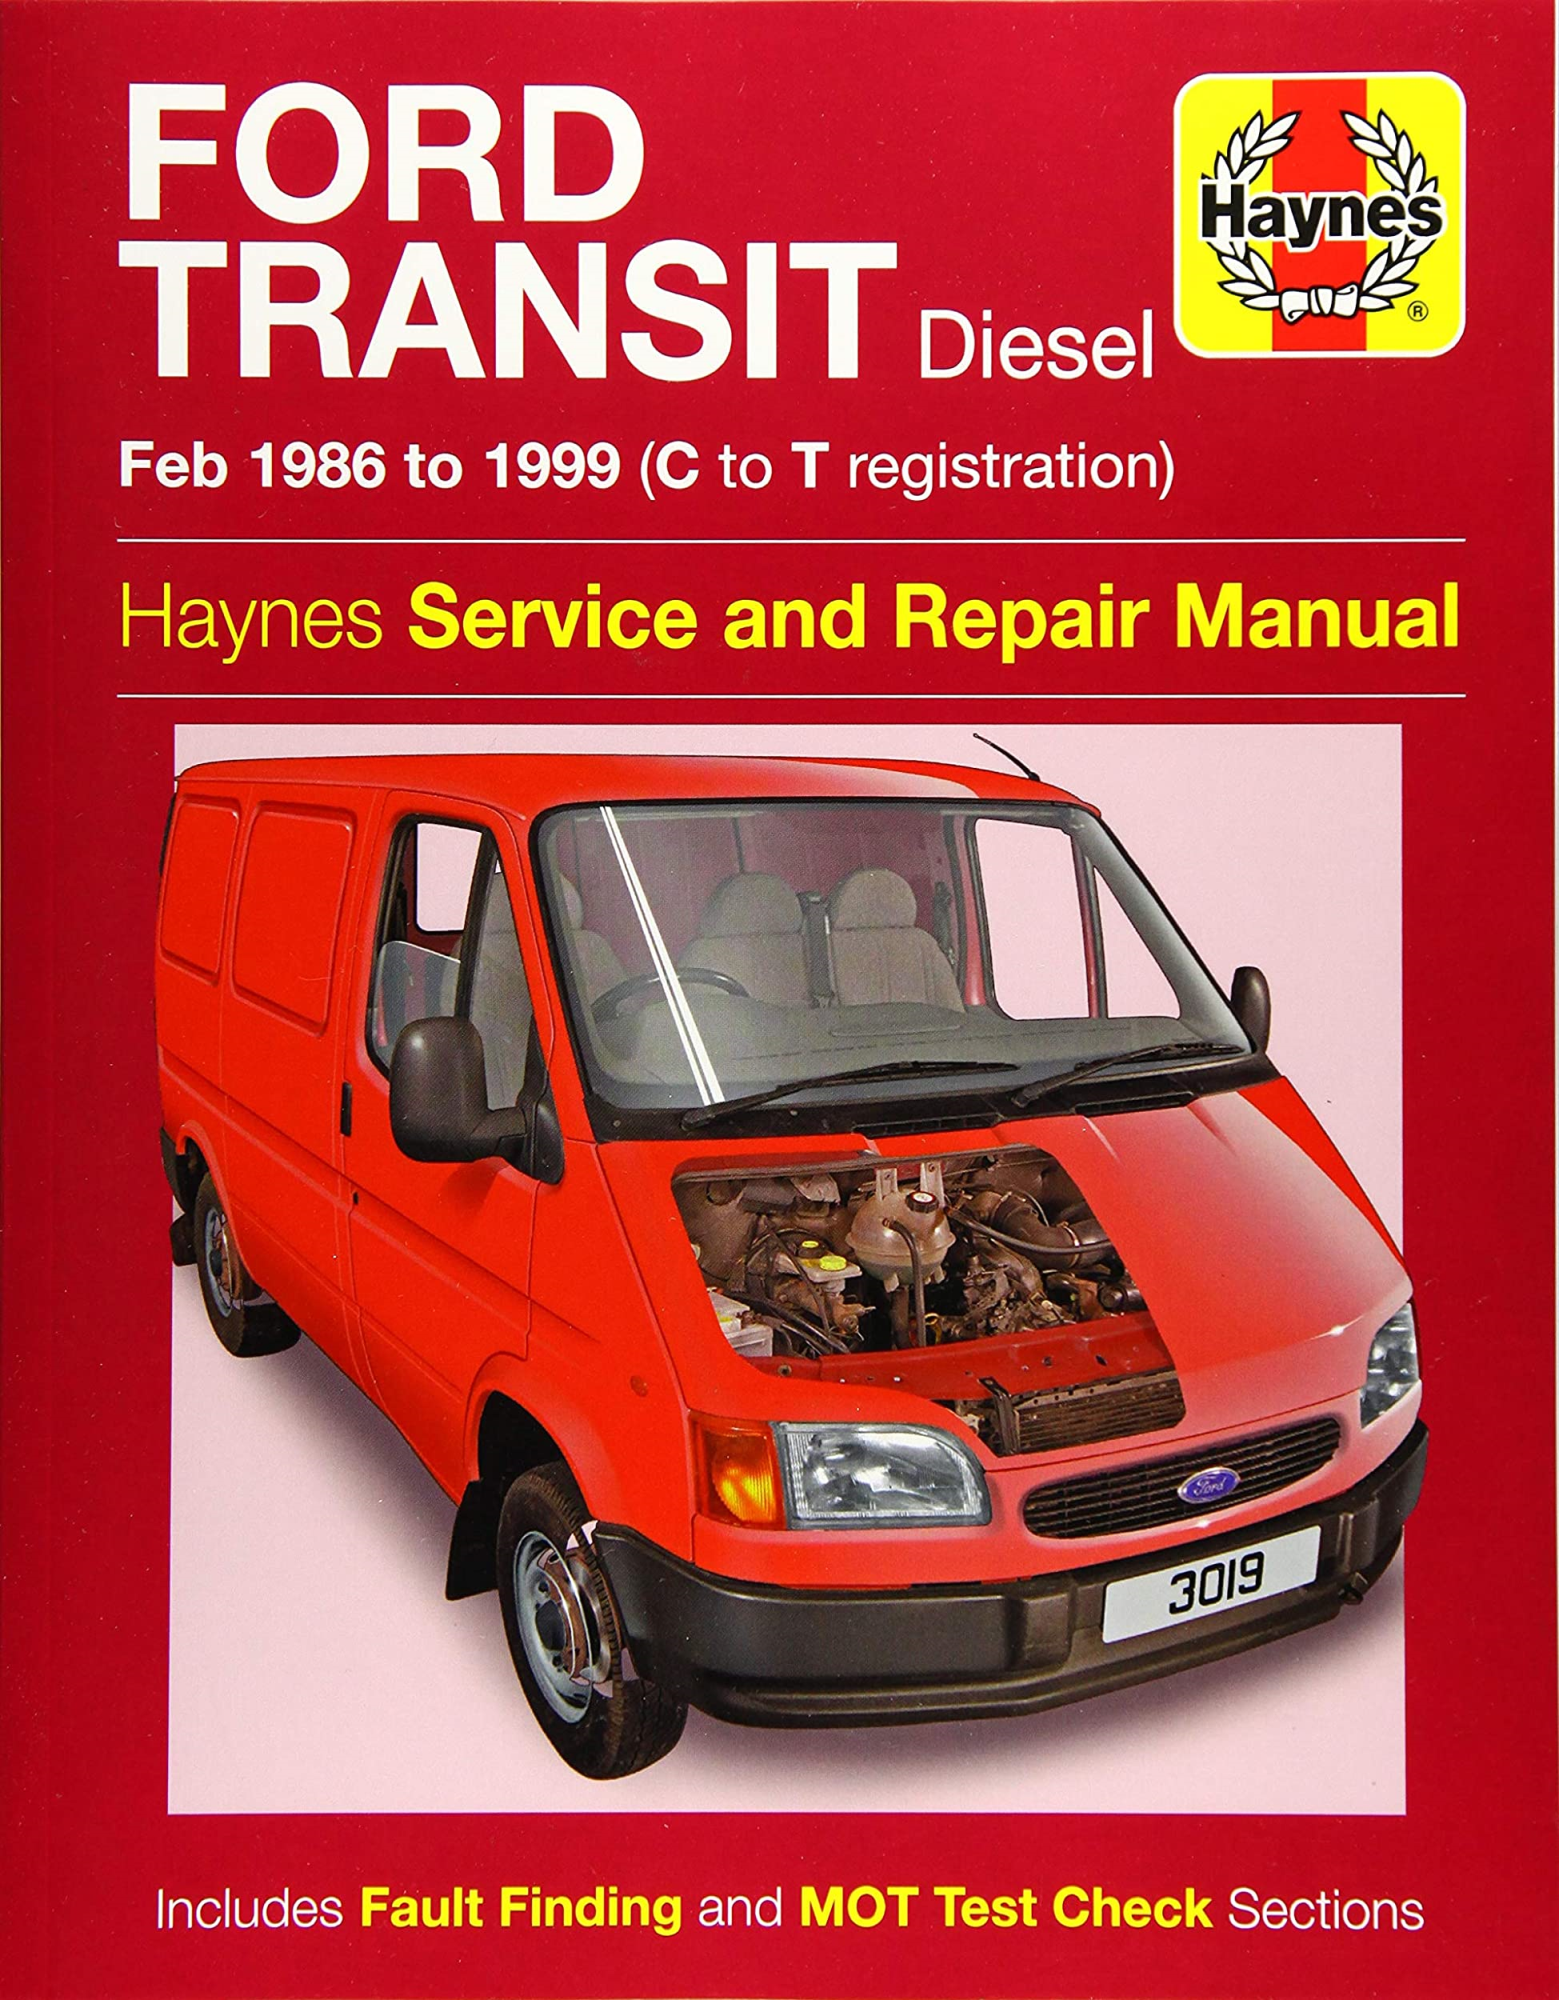 LIbri UK/US Haynes Publishing - Ford Transit Diesel Service And Repair Manual : 86-99 NUOVO SIGILLATO, EDIZIONE DEL 15/01/2016 SUBITO DISPONIBILE